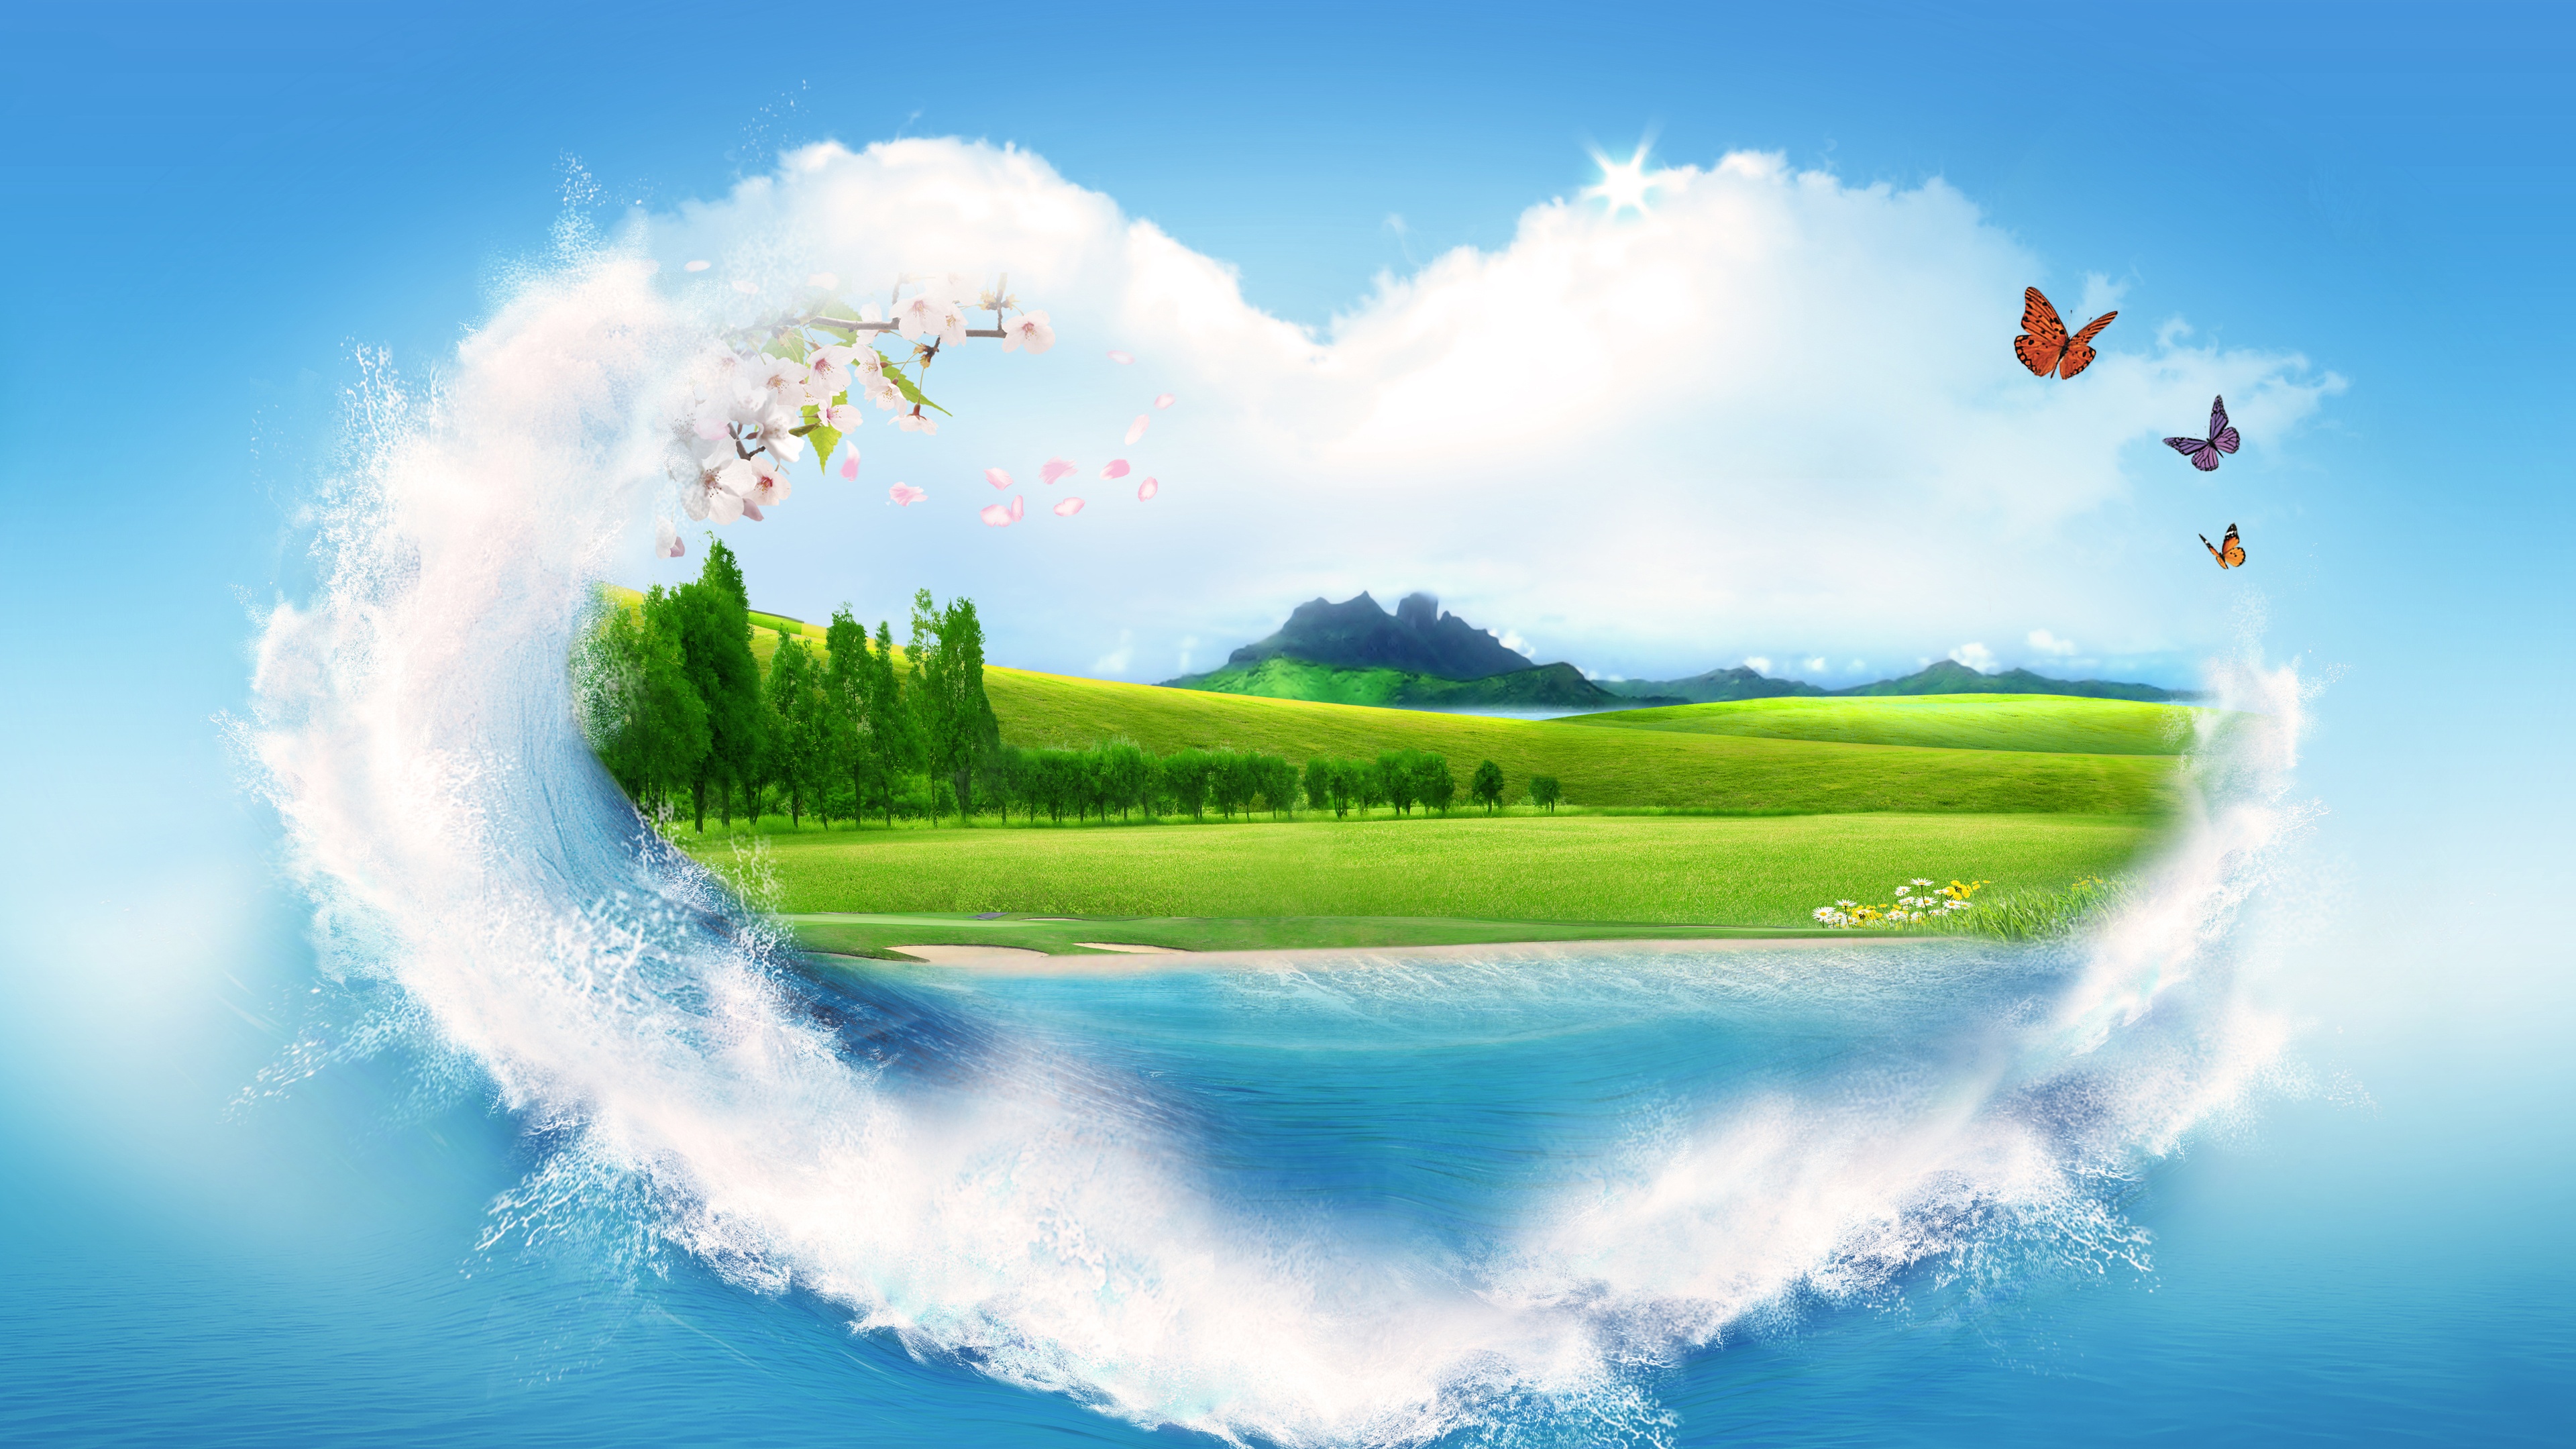 心形爱心山水风景画蝴蝶创意5k风景图片壁纸